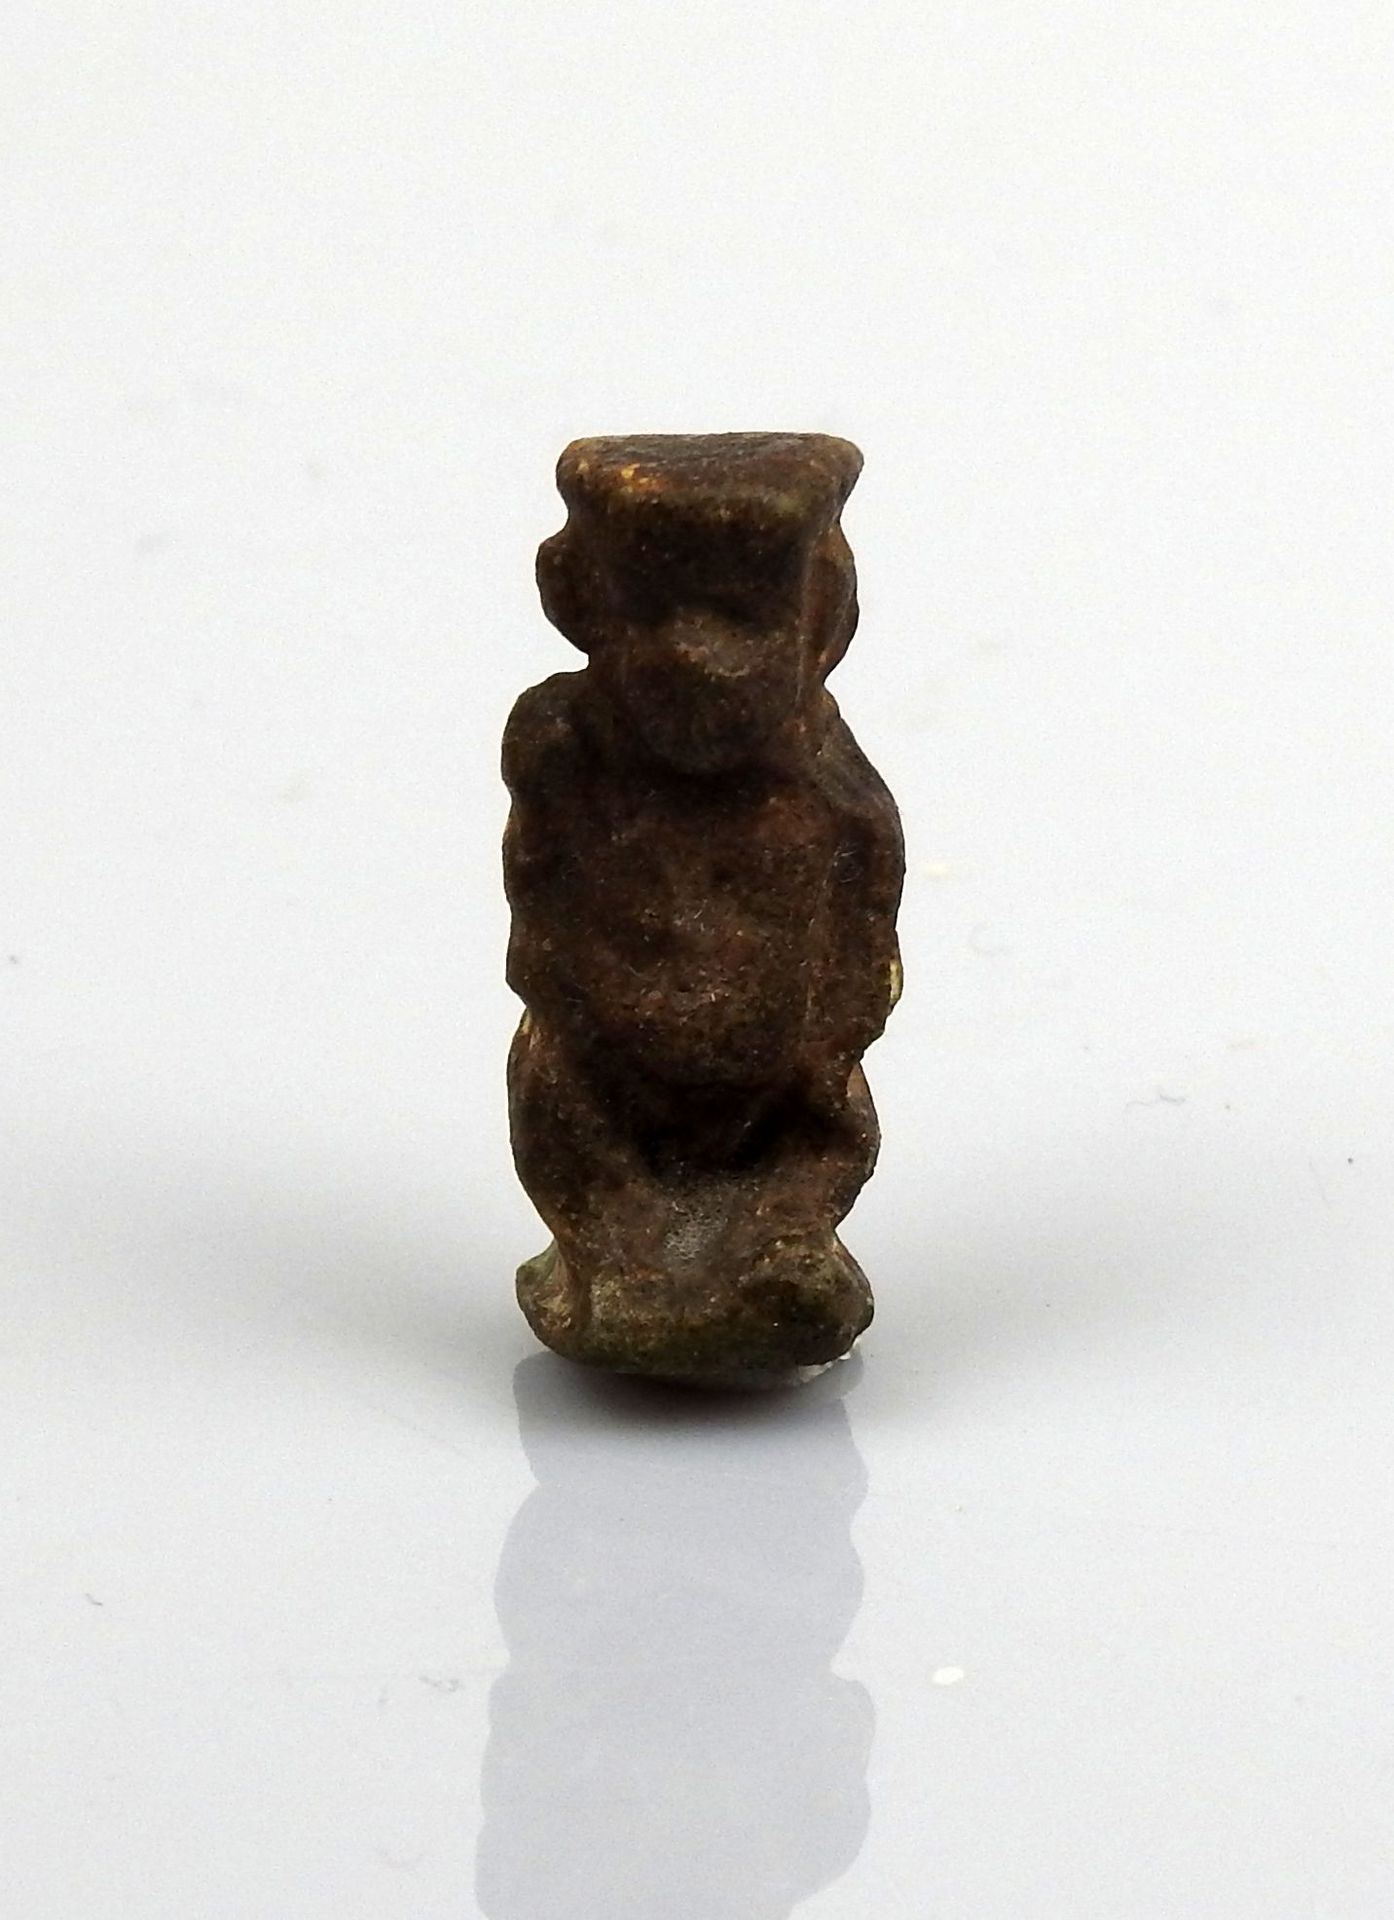 Null Amulett für Bes

Fritte 2,5 cm

Ägypten Späte Dynastie XXVI-XXX